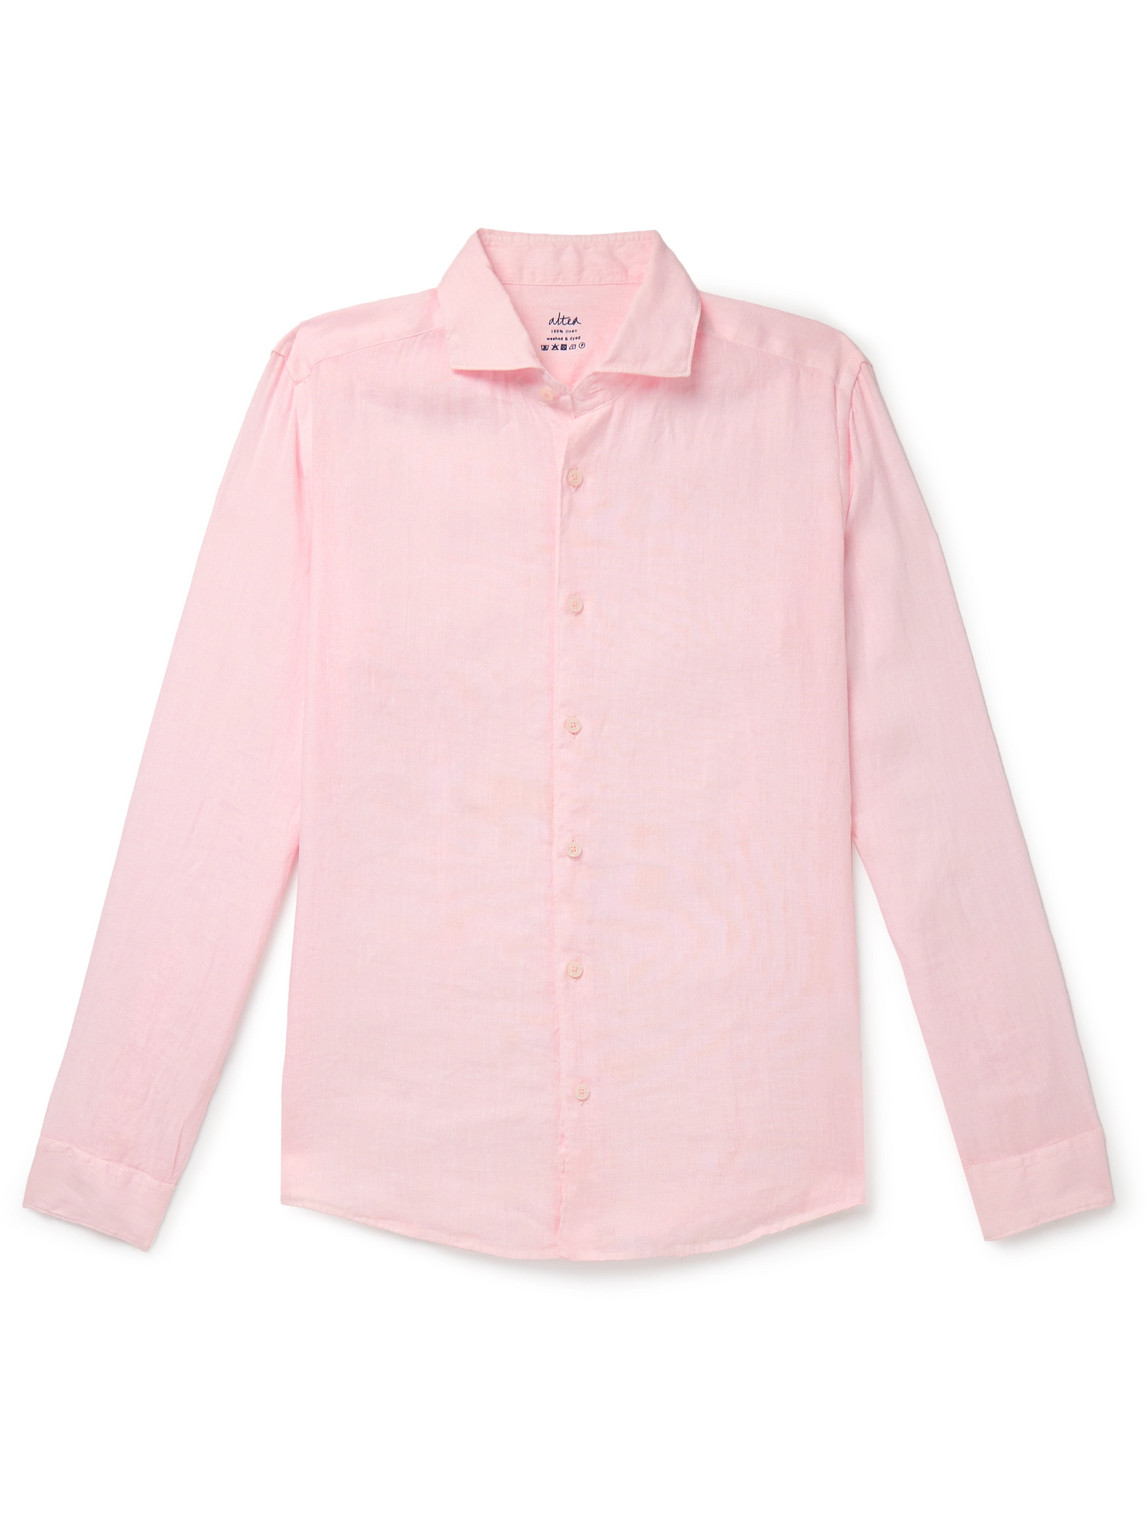 Mercer Slim-Fit Garment-Dyed Washed-Linen Shirt